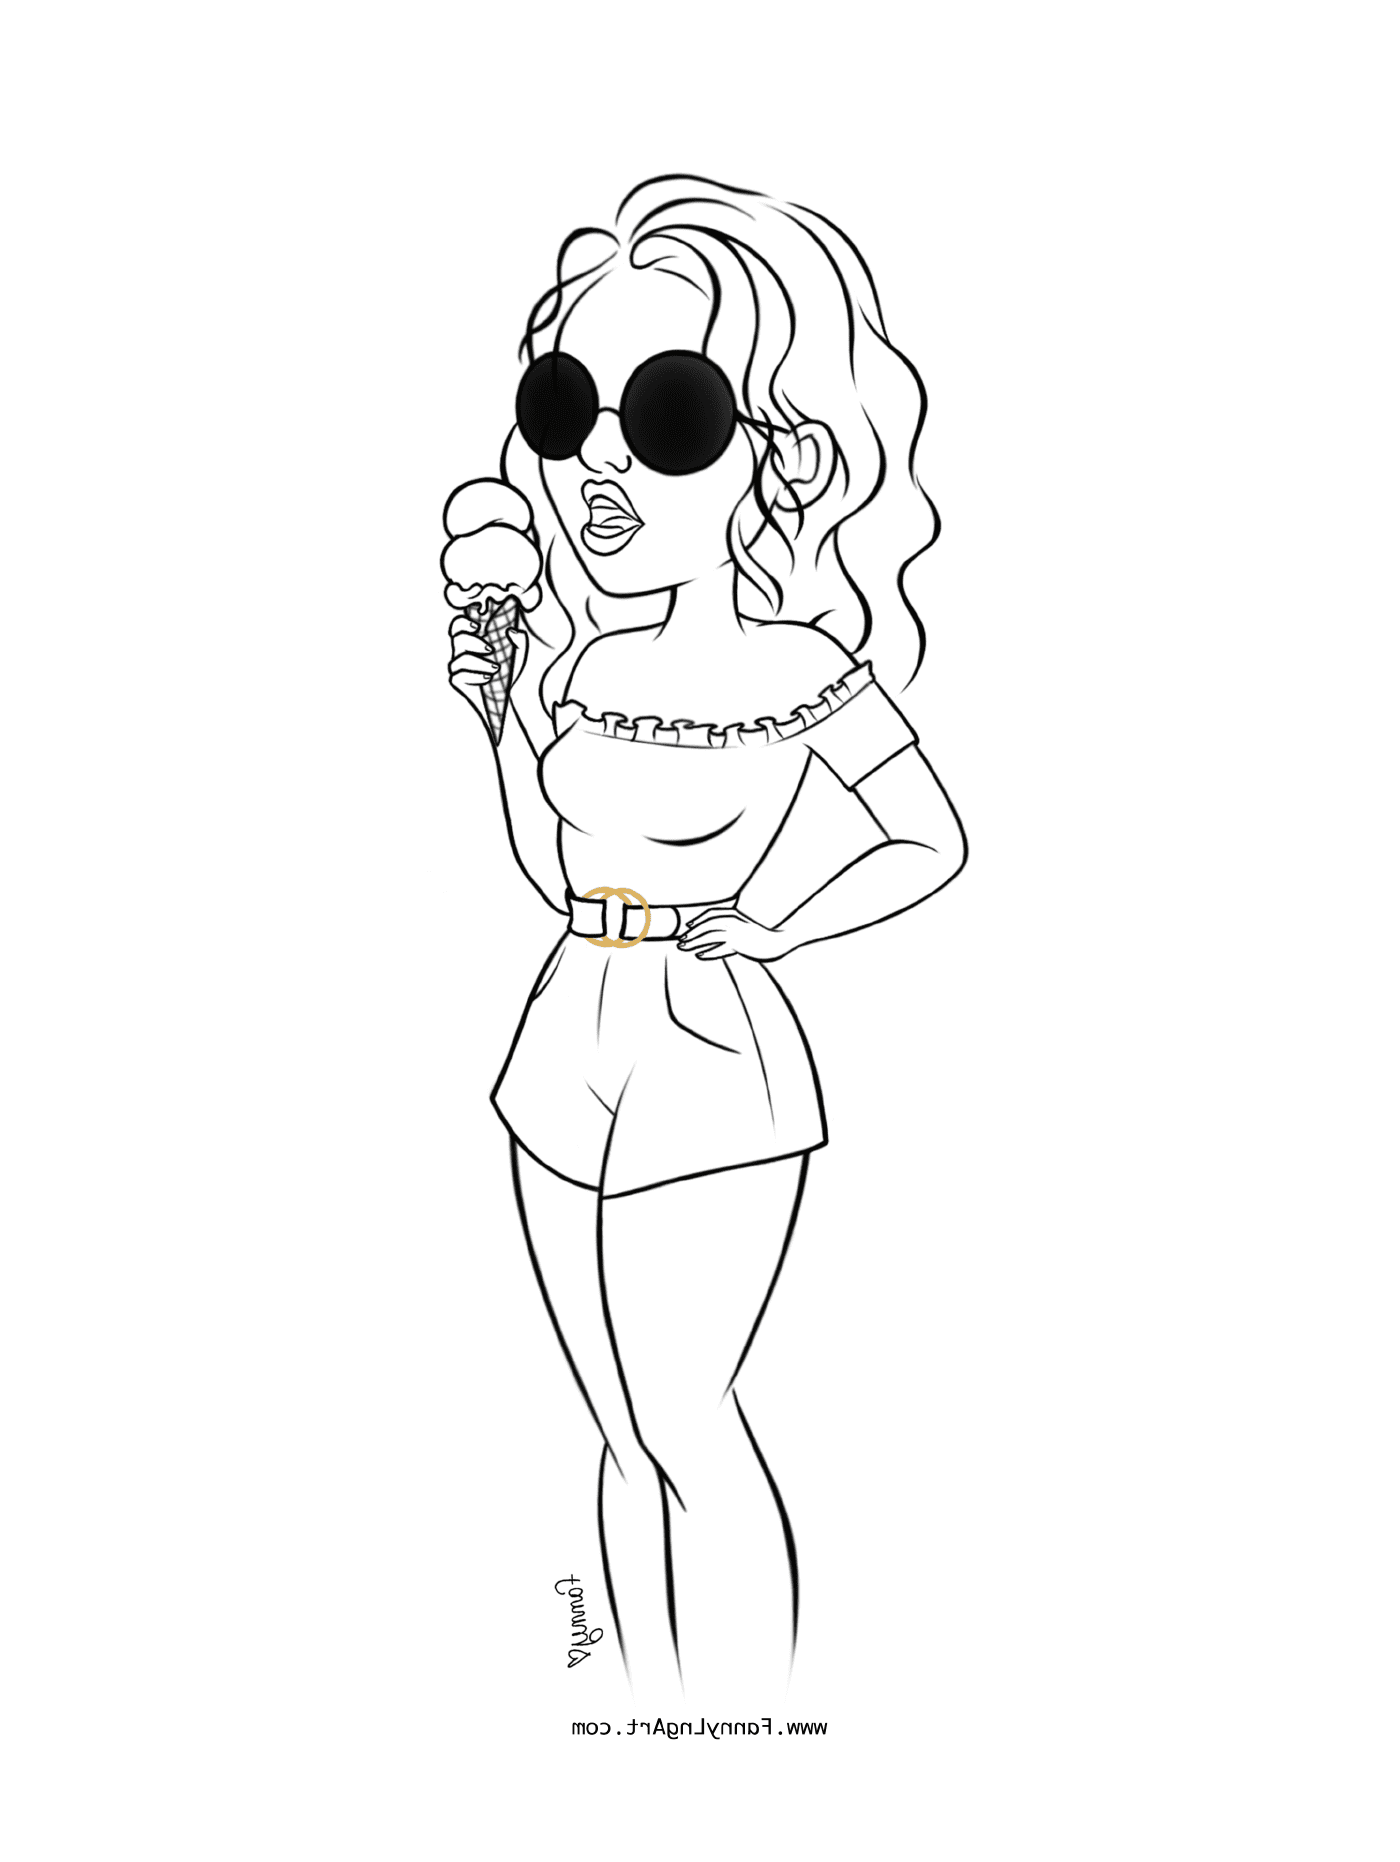  Chica joven con gafas de sol y sujetando un helado 